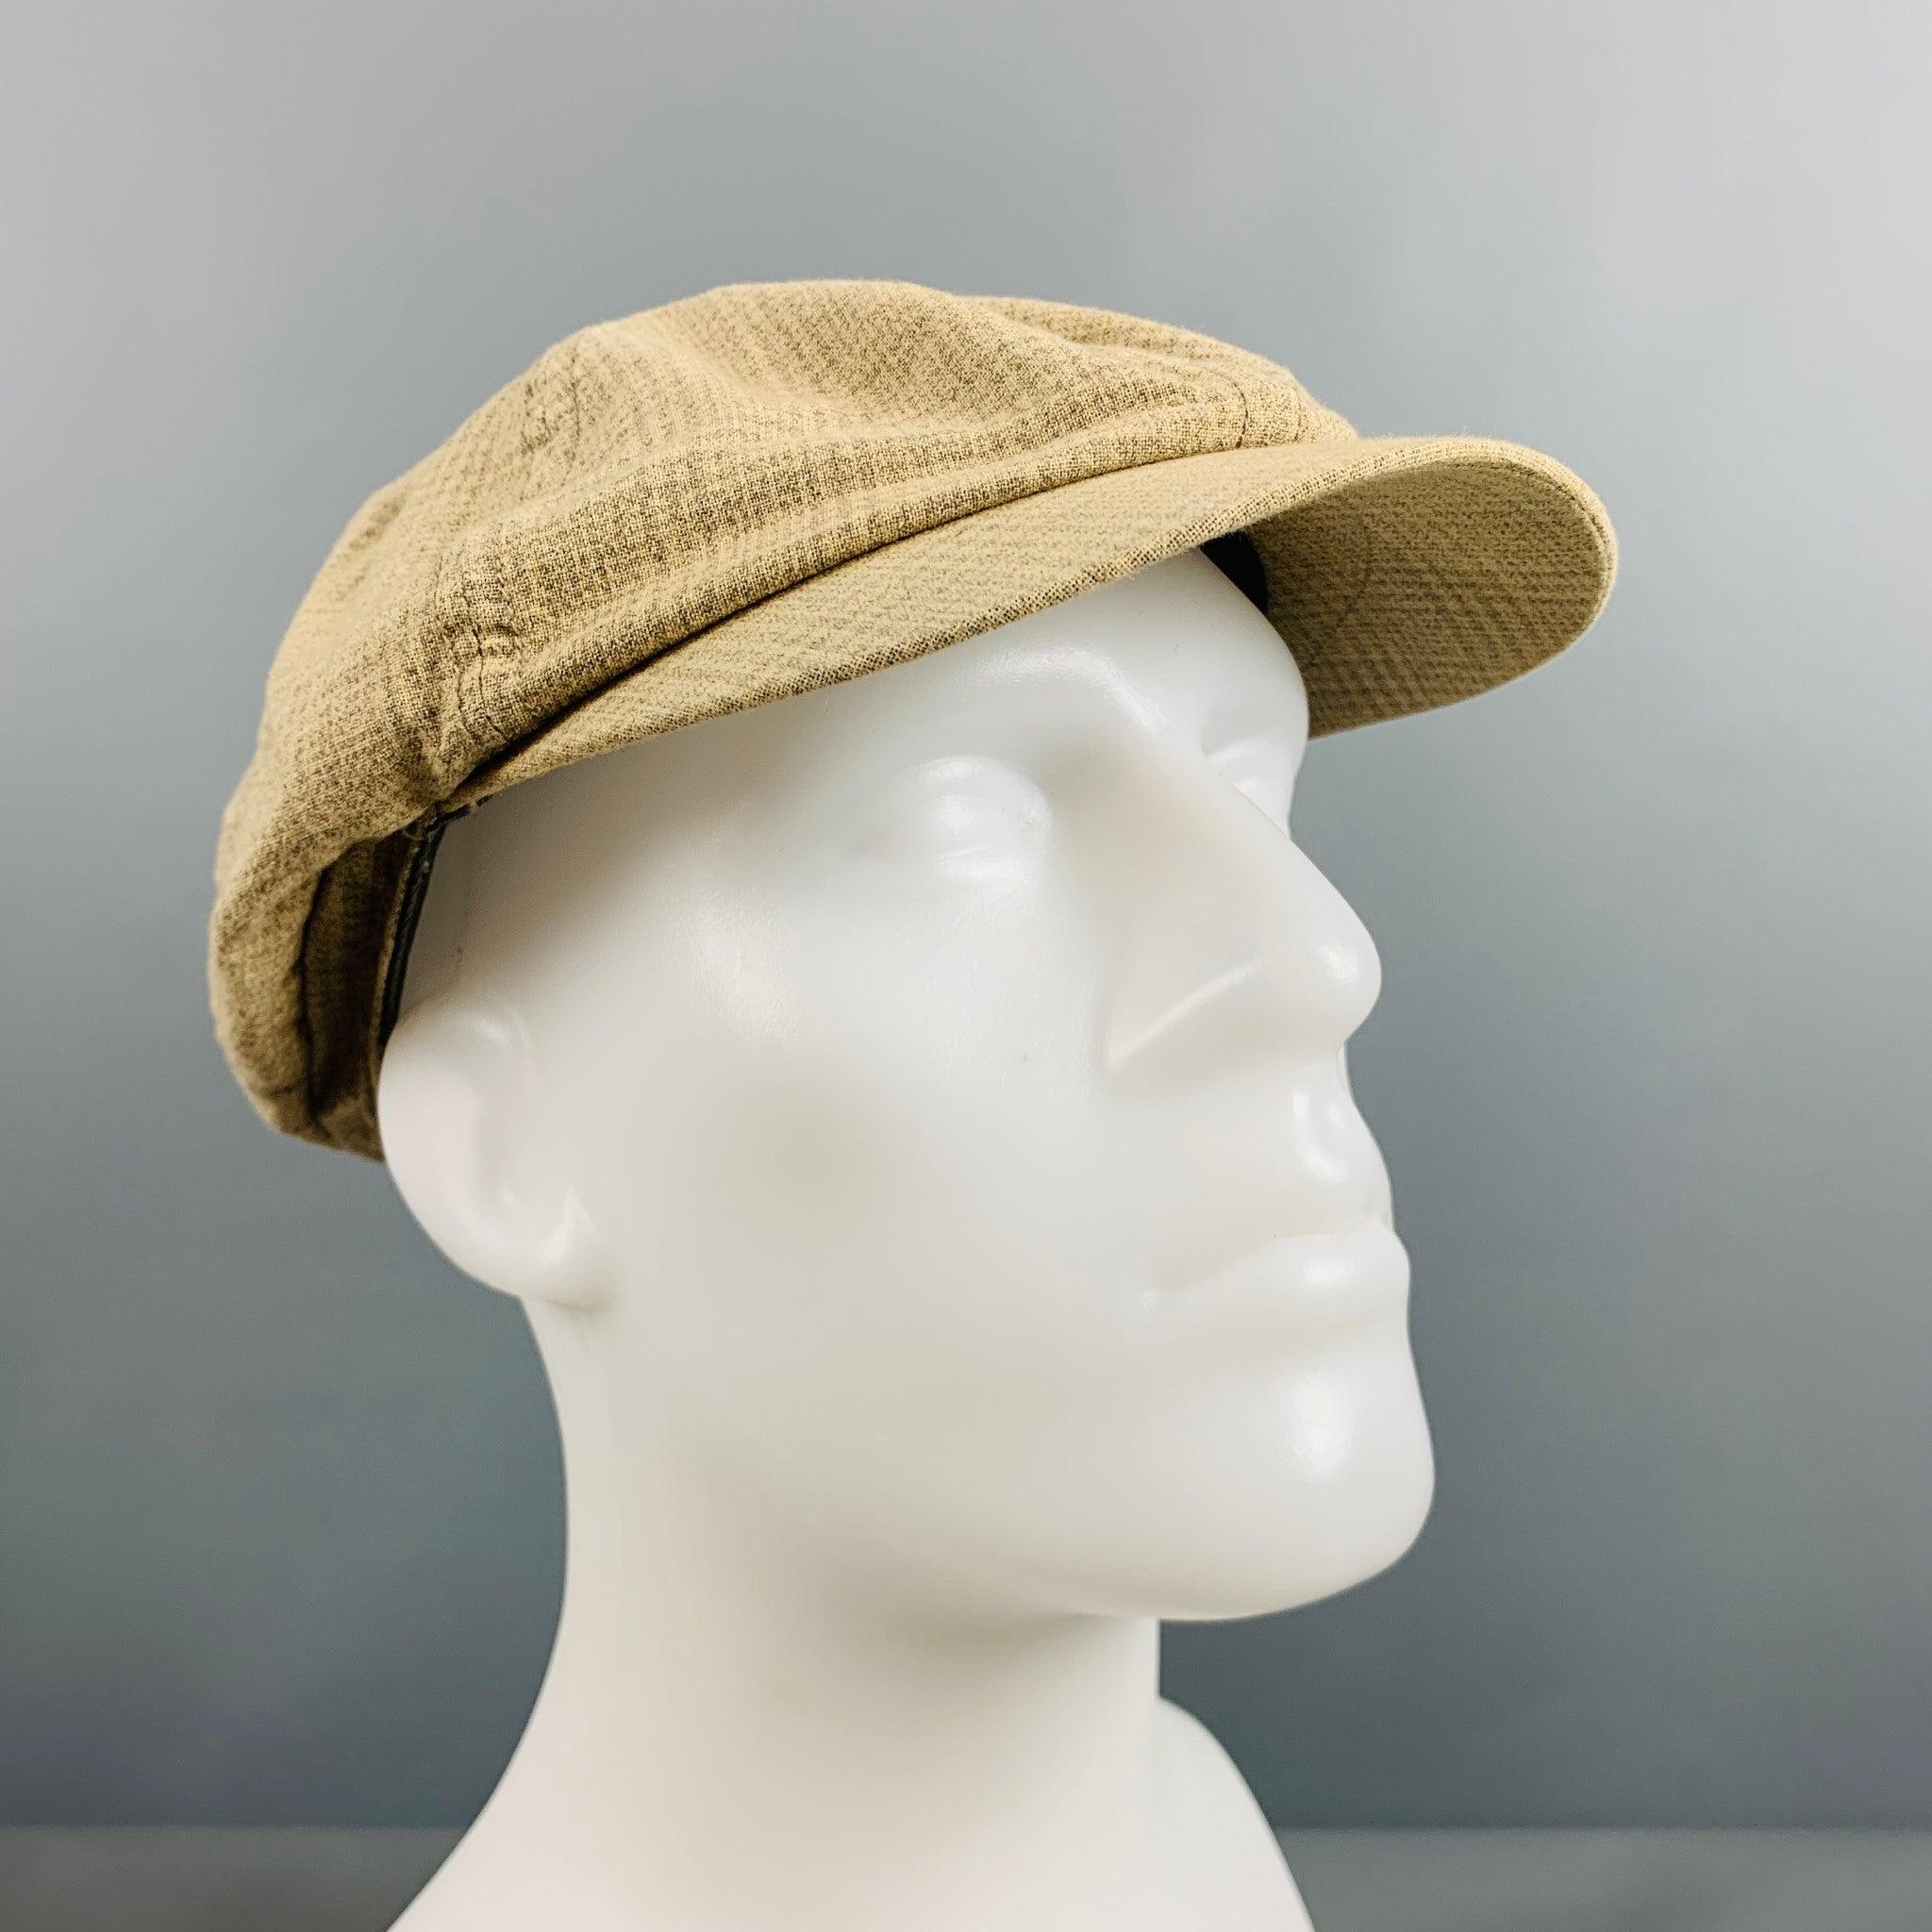 Le chapeau Newsboy de RRL by RALPH LAUREN se présente dans une matière tissée à carreaux beige et gris. Bon état d'origine. Marques d'usure modérées à l'intérieur. 

Marqué :   L 

Mesures : 
  Ouverture : 23 pouces Bordure : 3 pouces 

  
  
